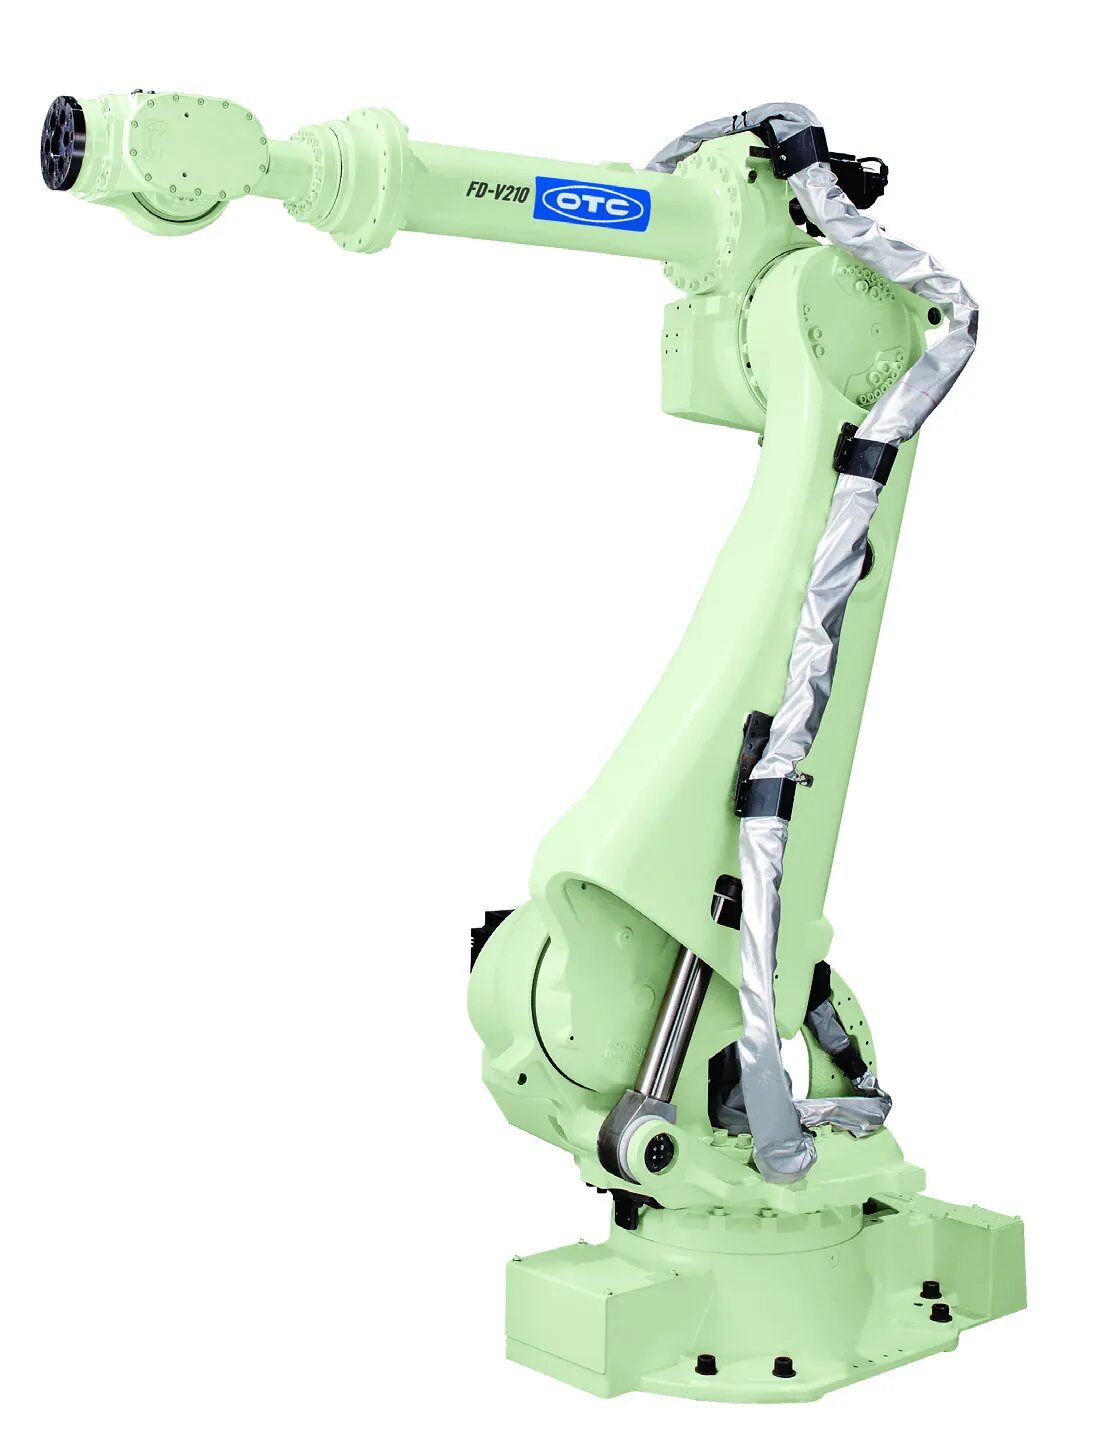 Промышленный робот манипулятор. Робот-манипулятор new0805a. Роботизированный сварочный комплекс OTC Daihen. Сварочный робот FD-v8l. Шарнирный робот scara.